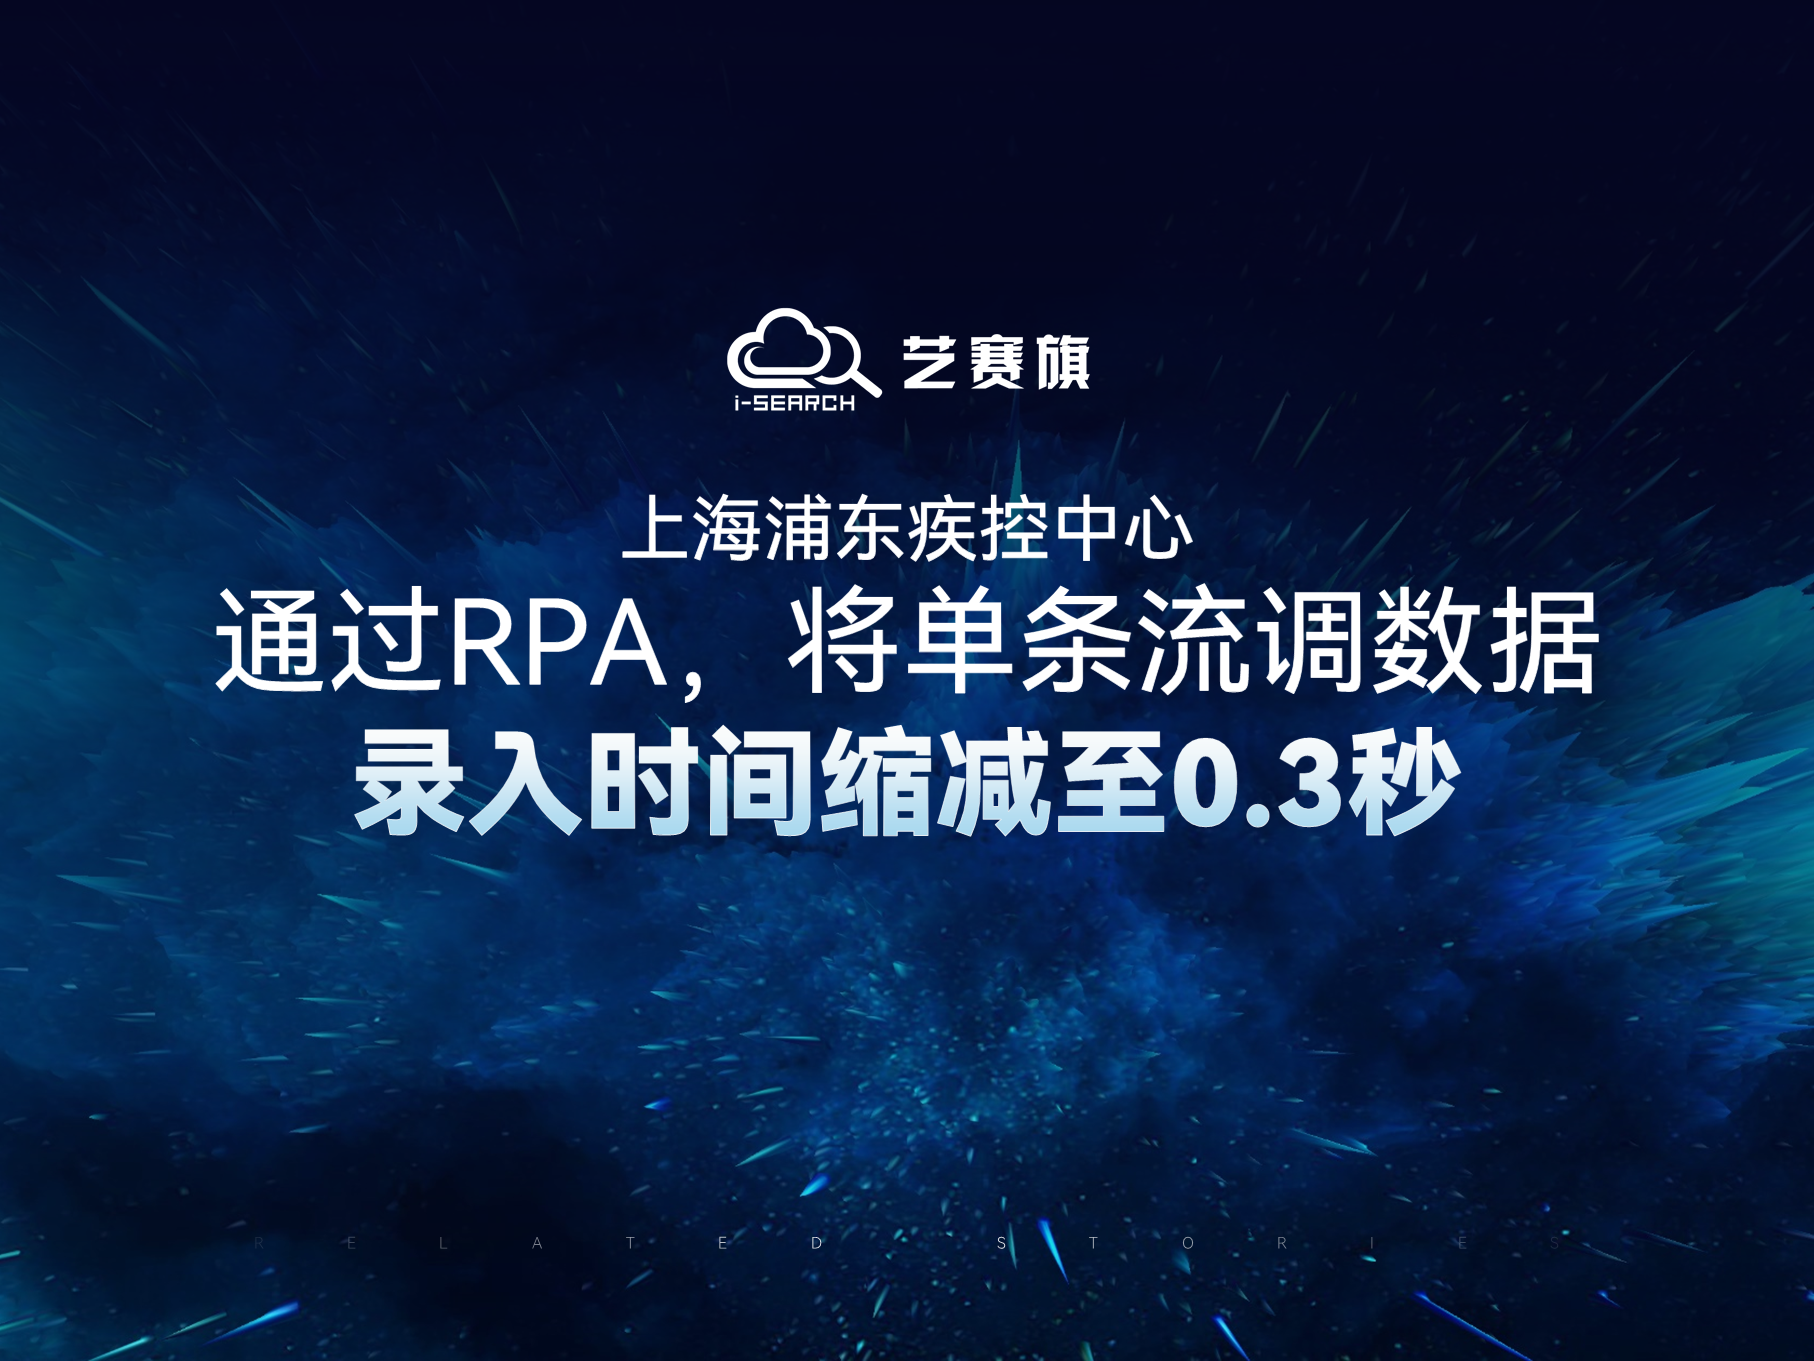 上海浦东疾控中心通过RPA，将单条流调数据录入时间缩减至0.3秒